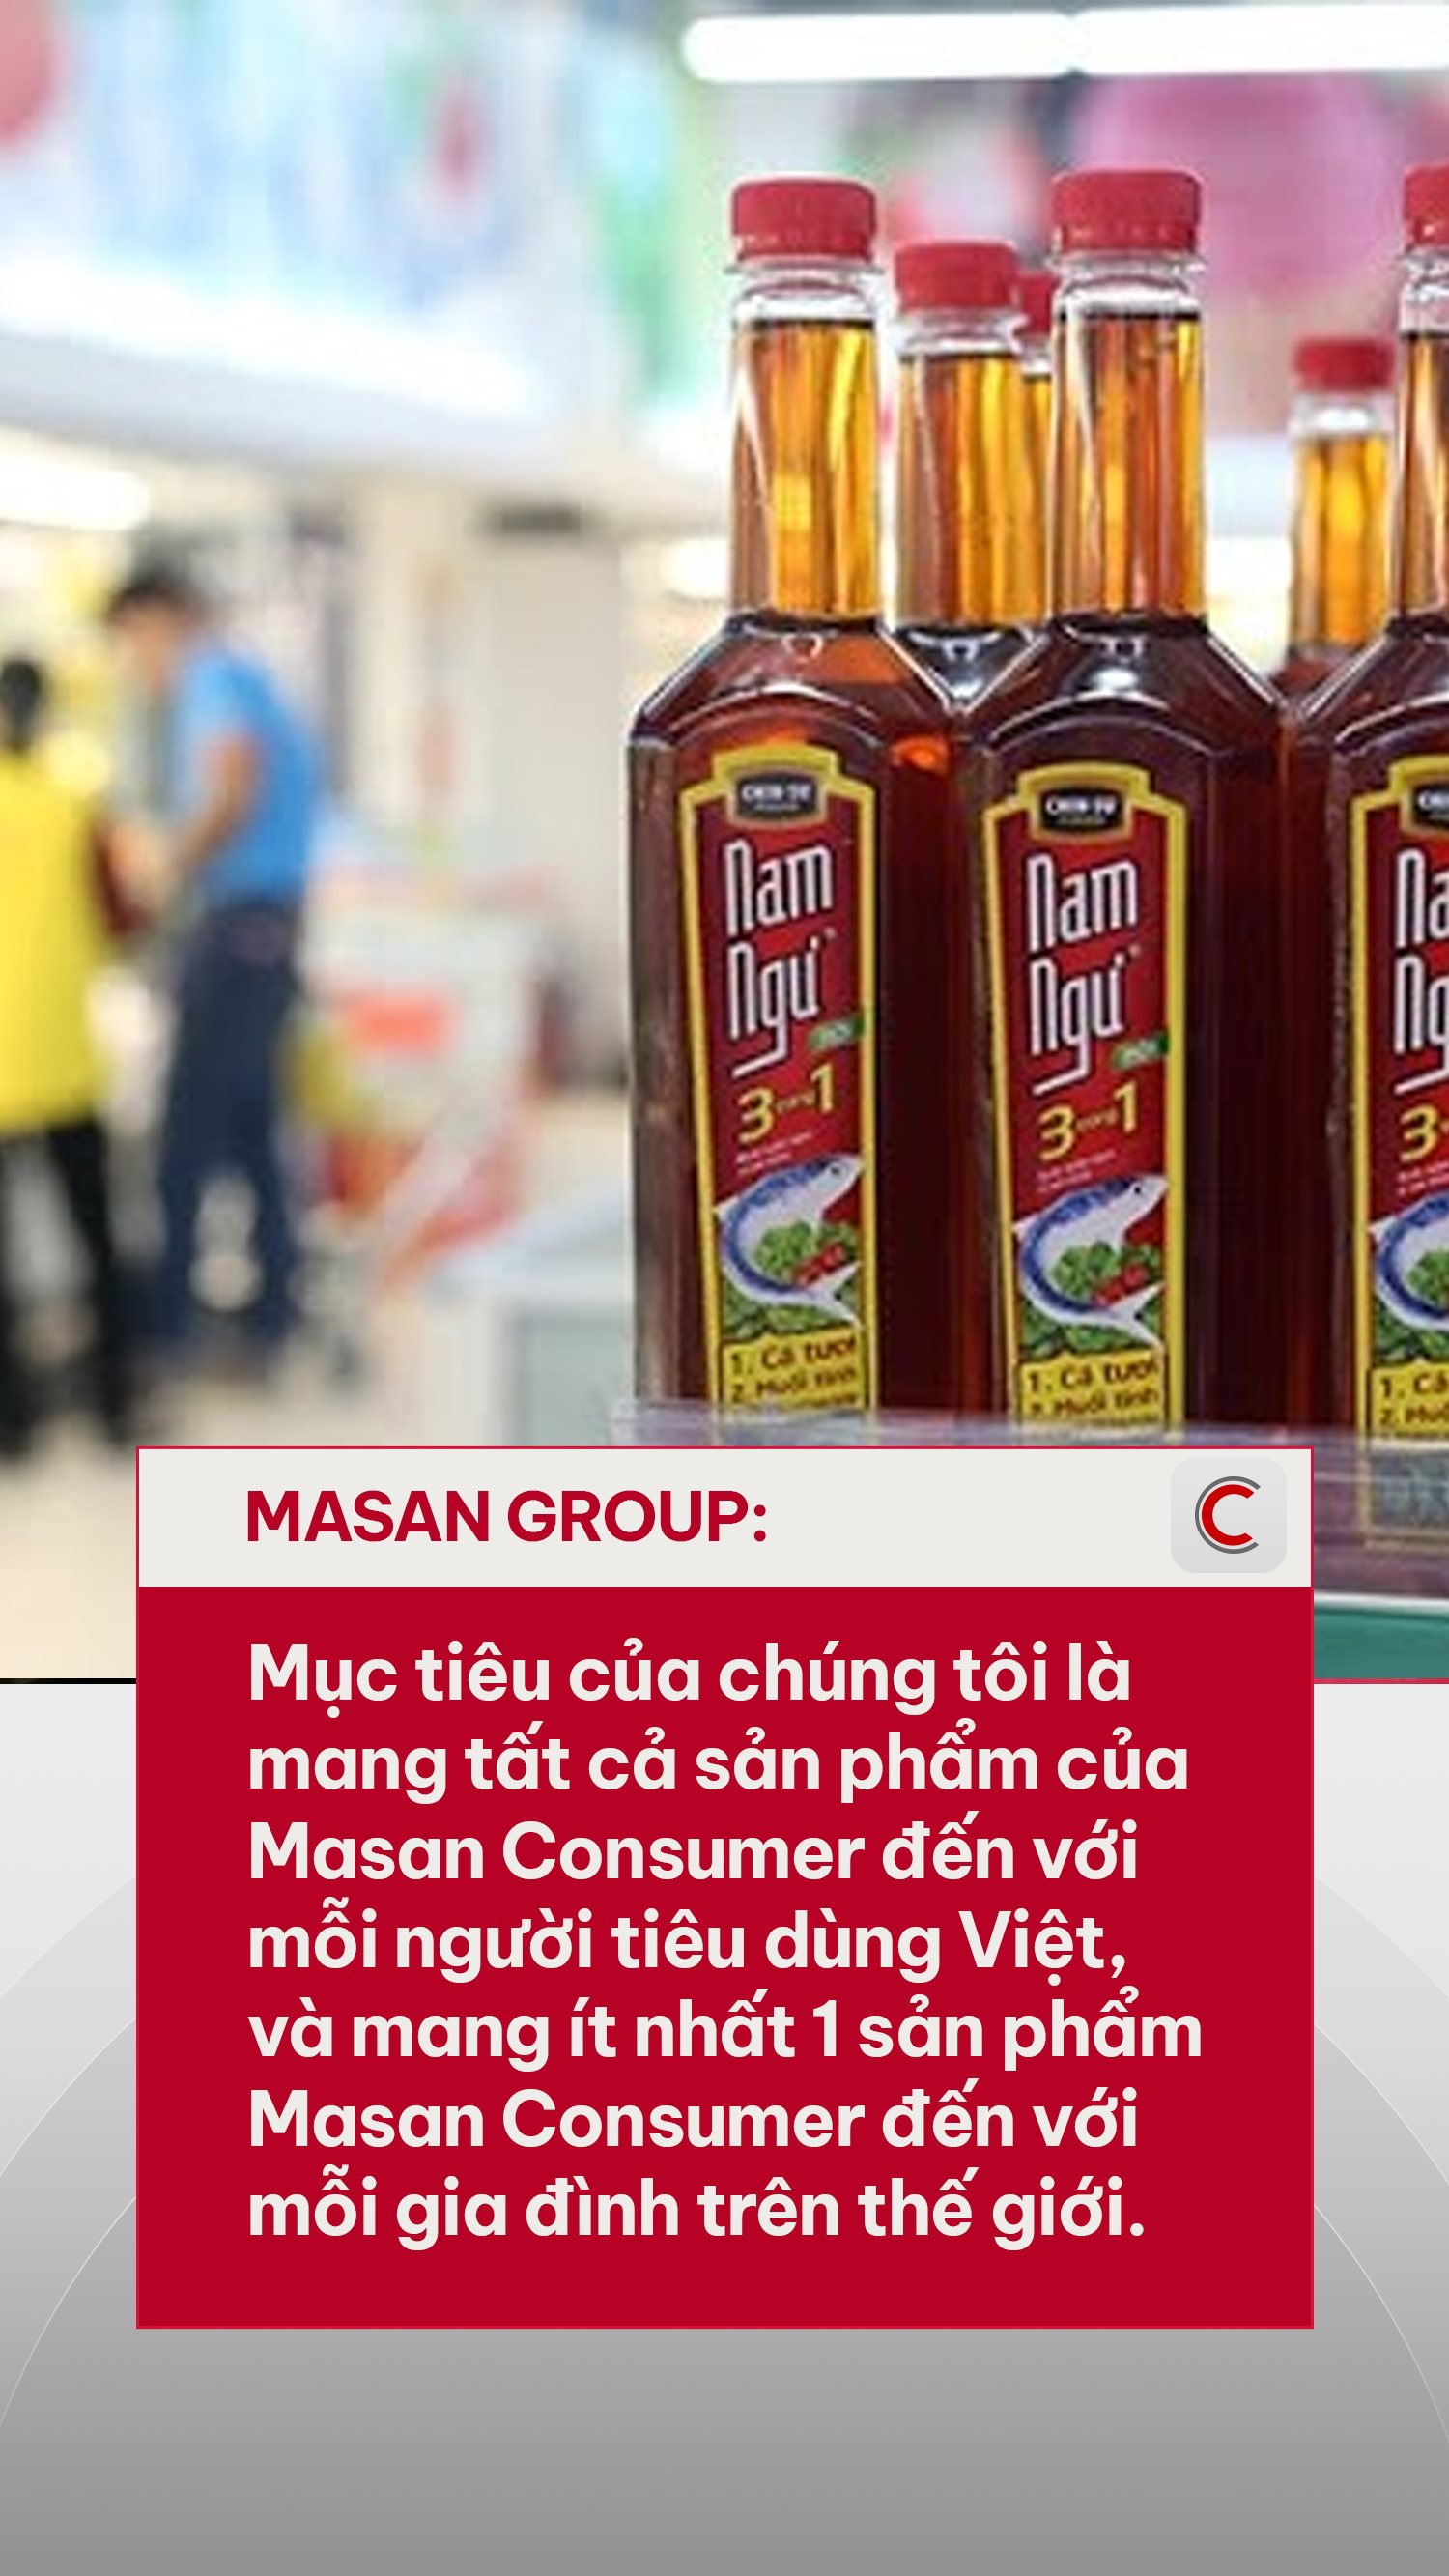 Cứ 10 bát nước mắm thì 7 bát của Masan, tỷ phú Nguyễn Đăng Quang hé lộ tham vọng bước chân ra thị trường 3.100 tỷ USD- Ảnh 3.